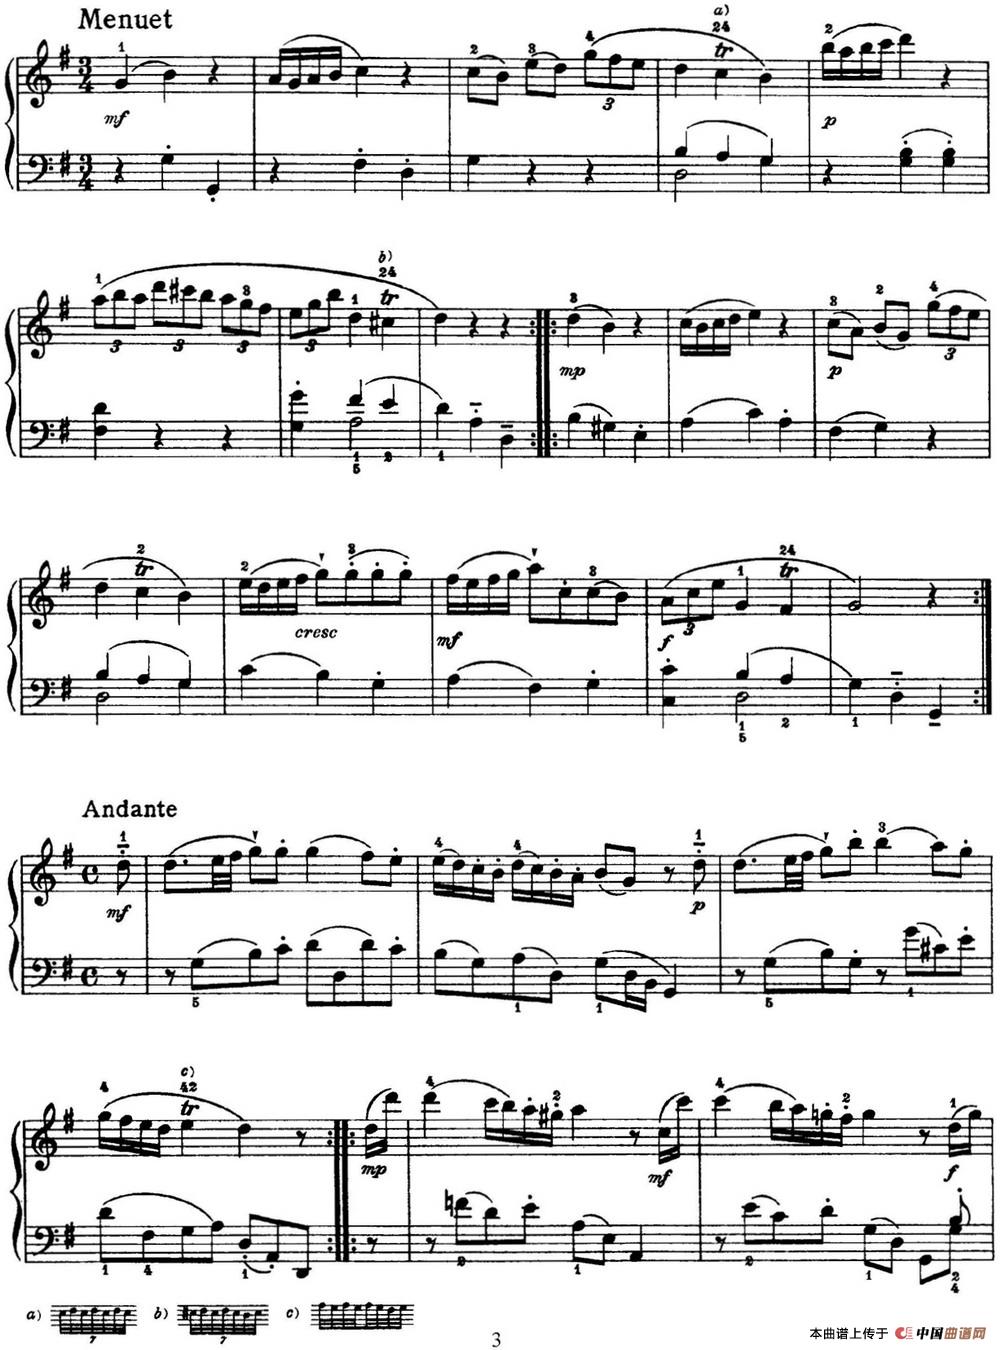 《海顿 钢琴奏鸣曲 Hob XVI 8 Divertimento G major》钢琴曲谱图分享